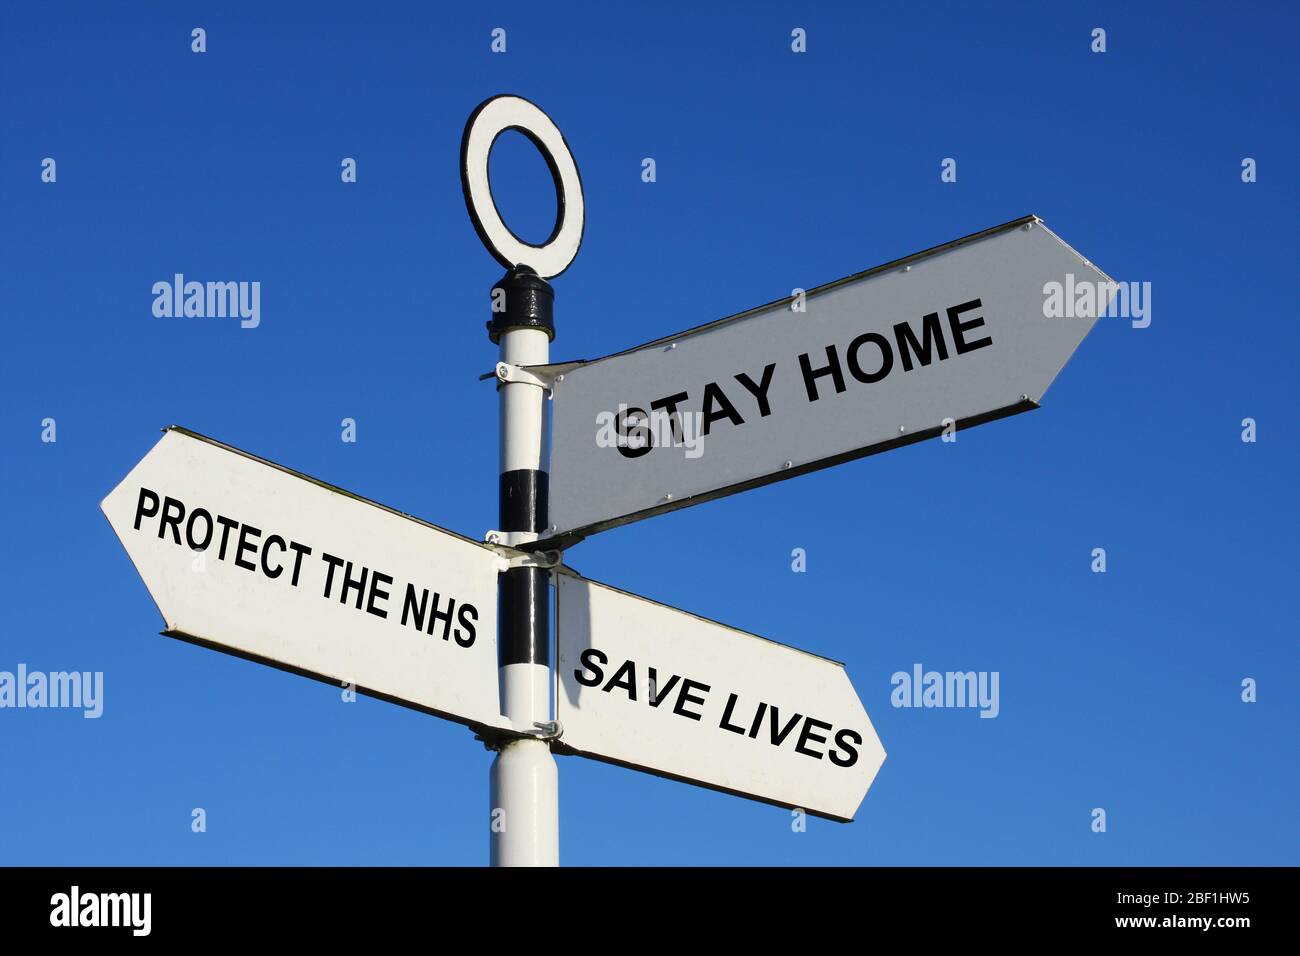 Immagine digitale alterata che mostra il messaggio di informazione del governo britannico durante il blocco del coronavirus covid-19 nel Regno Unito Foto Stock